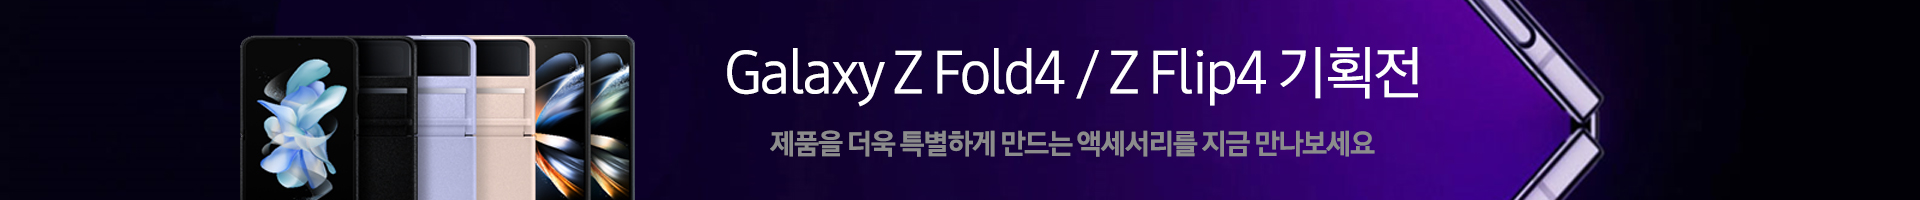 갤럭시 Z 폴드4/ 플립4 특별기획전